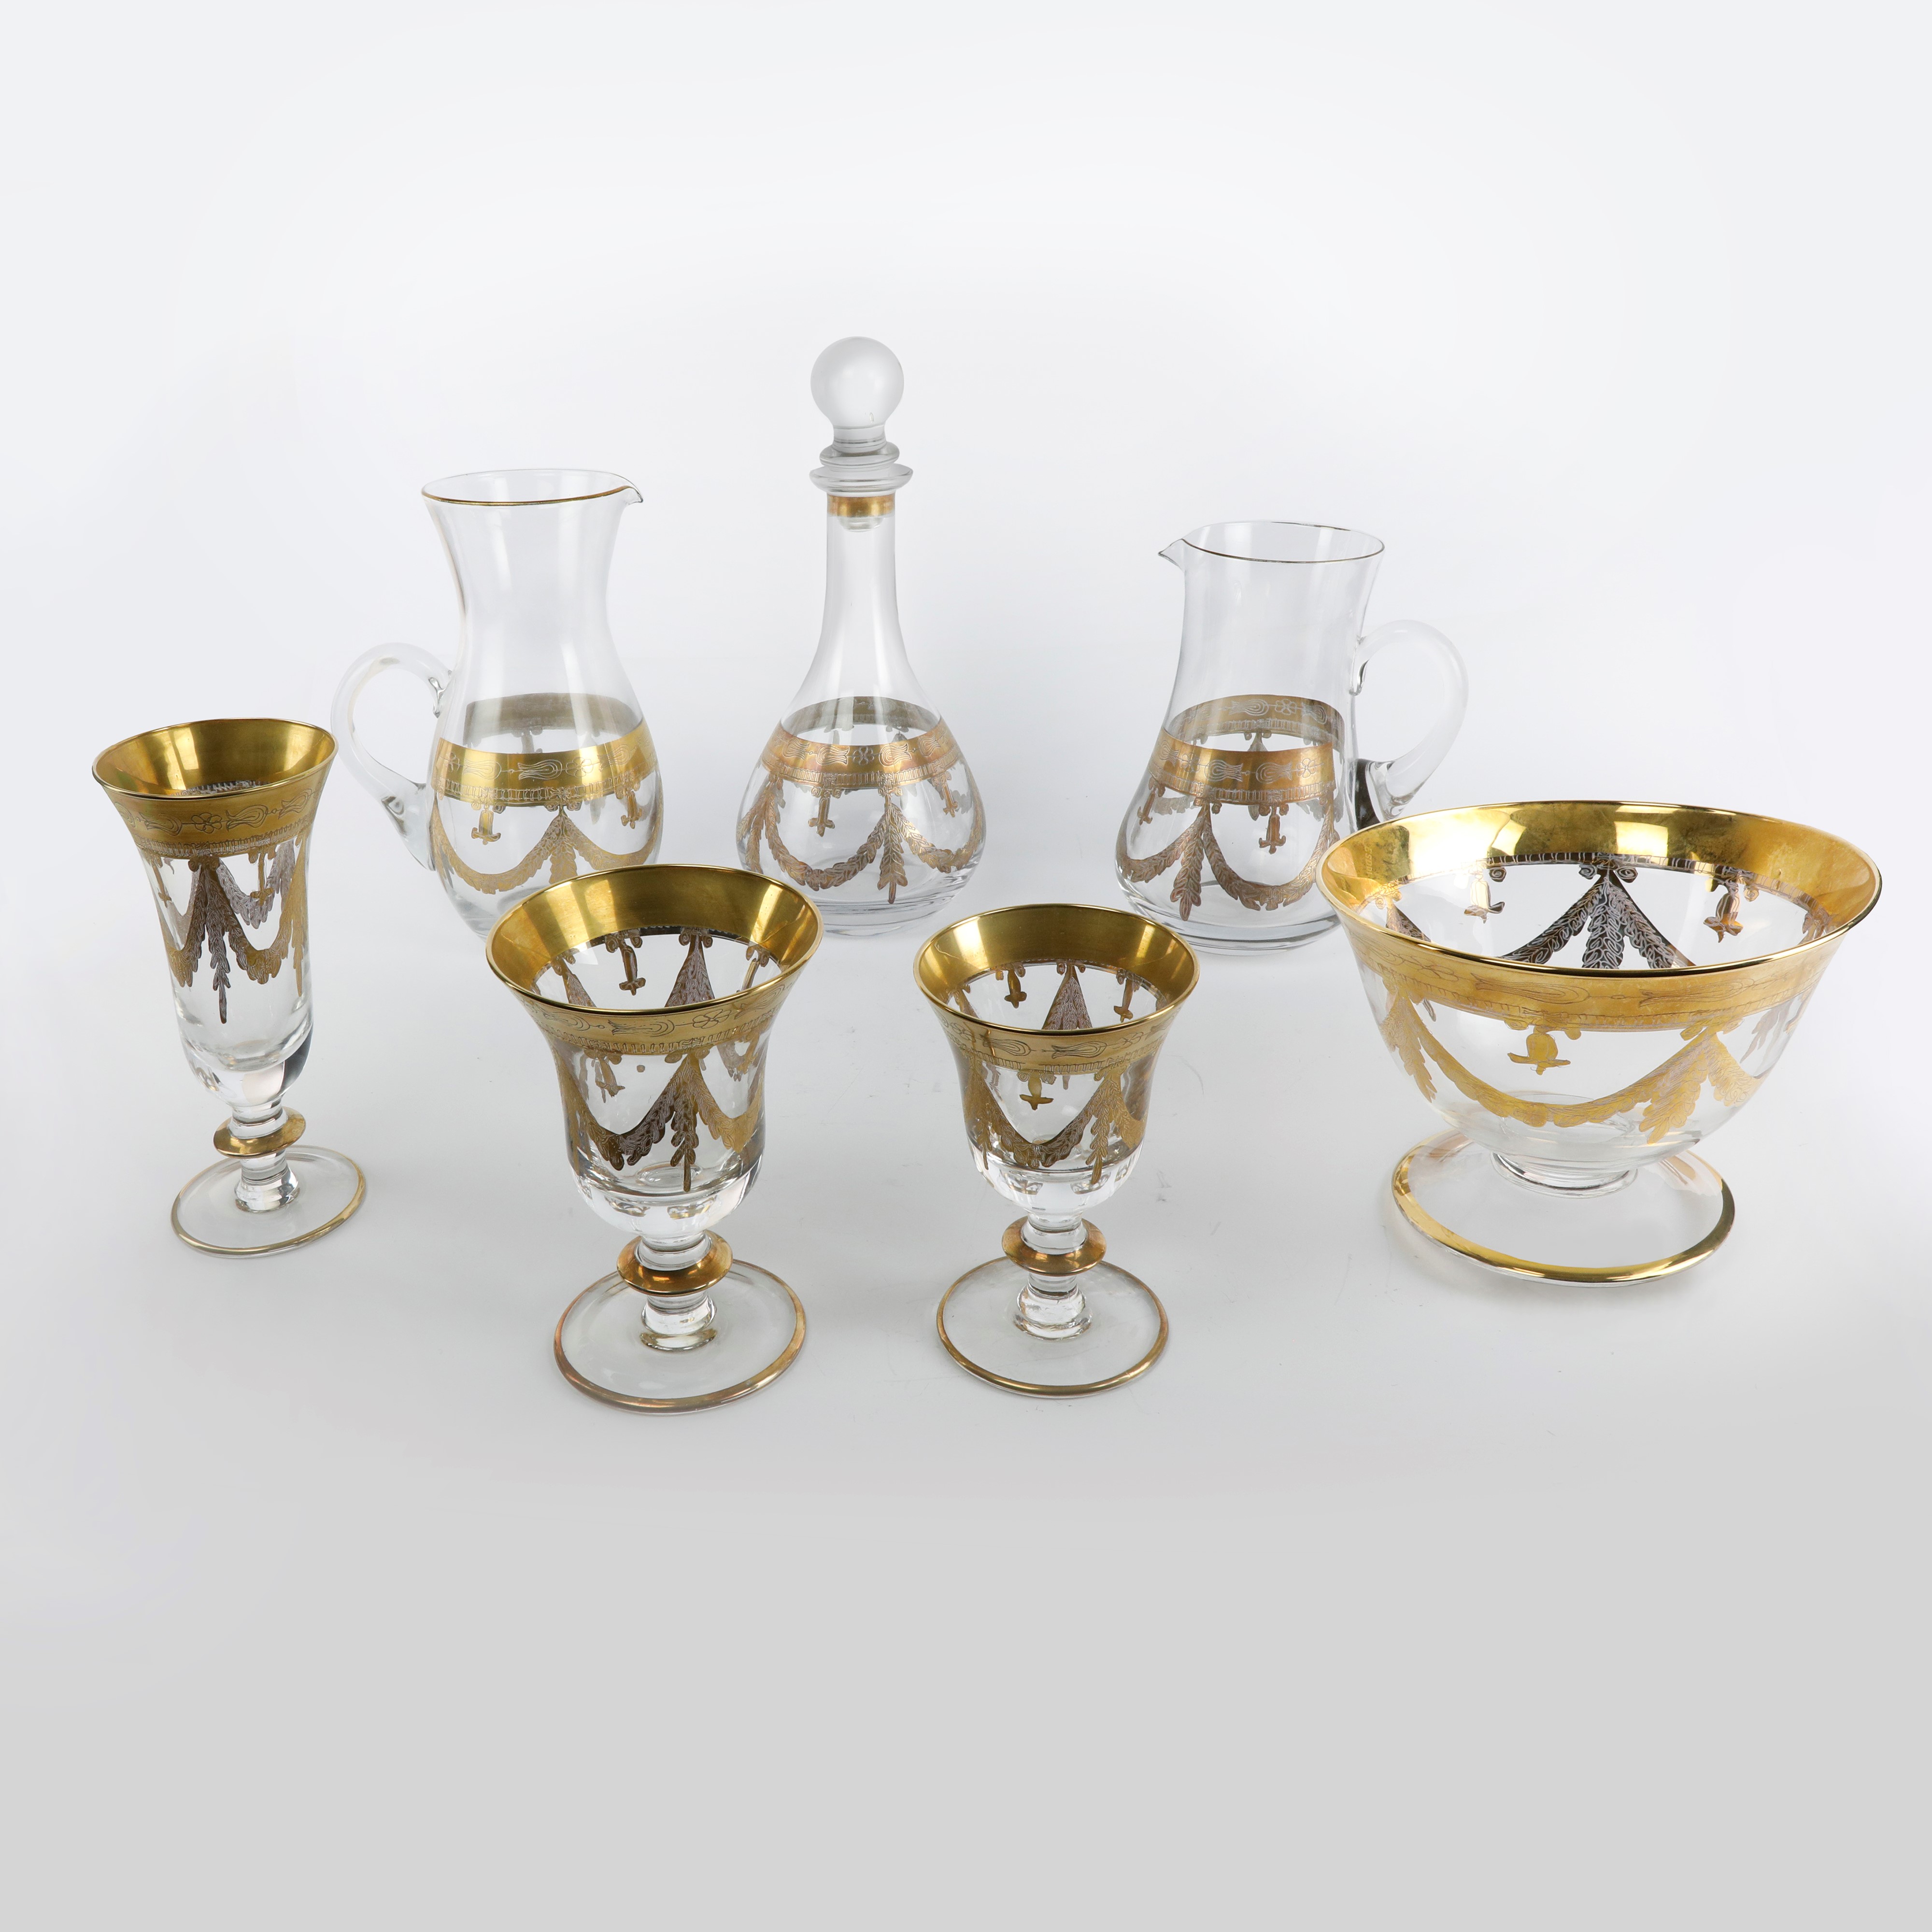 Servizio di bicchieri in cristallo con decoro oro zecchino